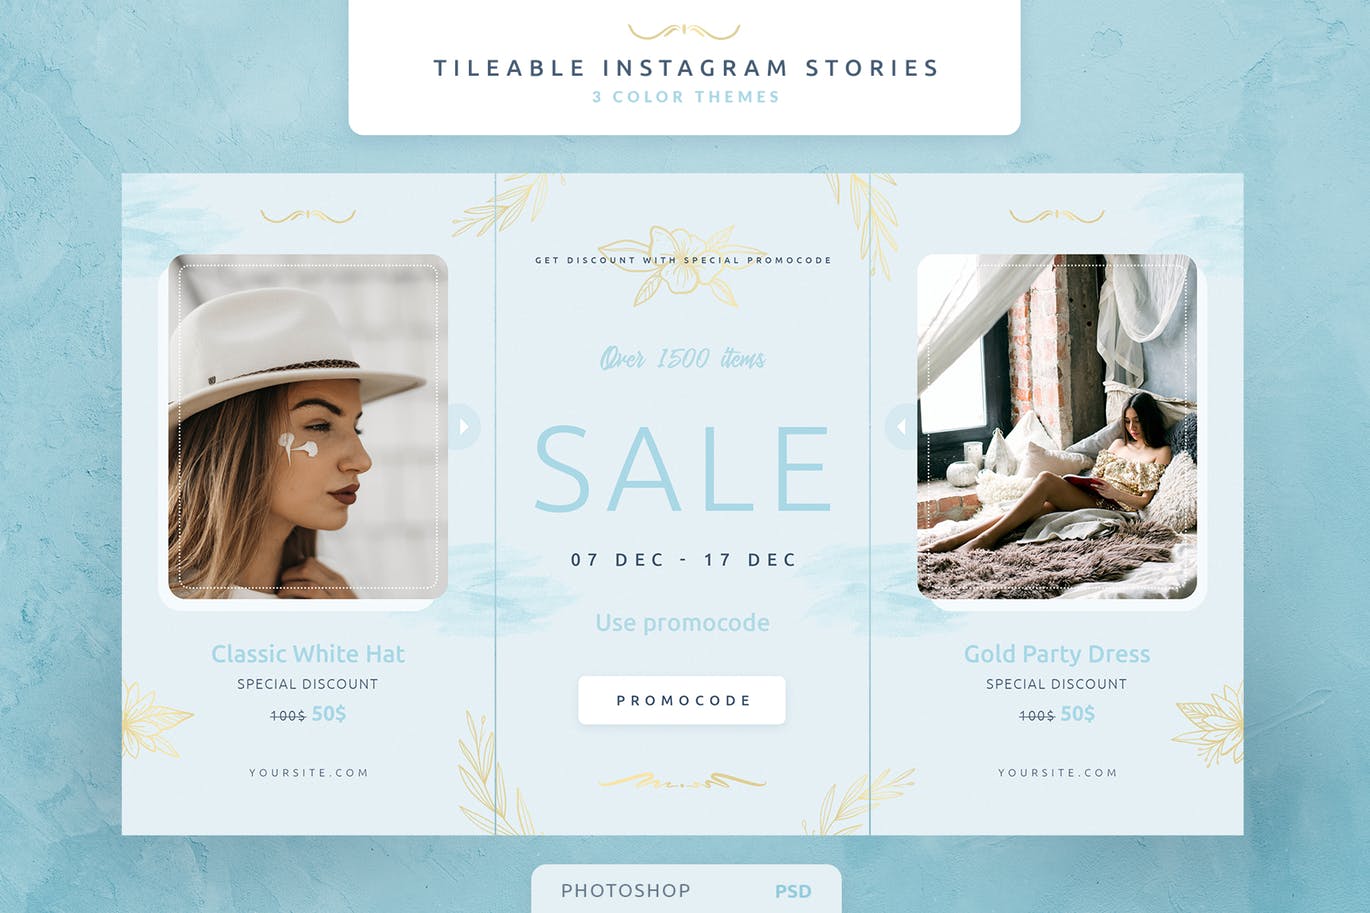 创意三列式Instagram社交品牌故事设计模板第一素材精选 Tileable Instagram Stories插图(1)